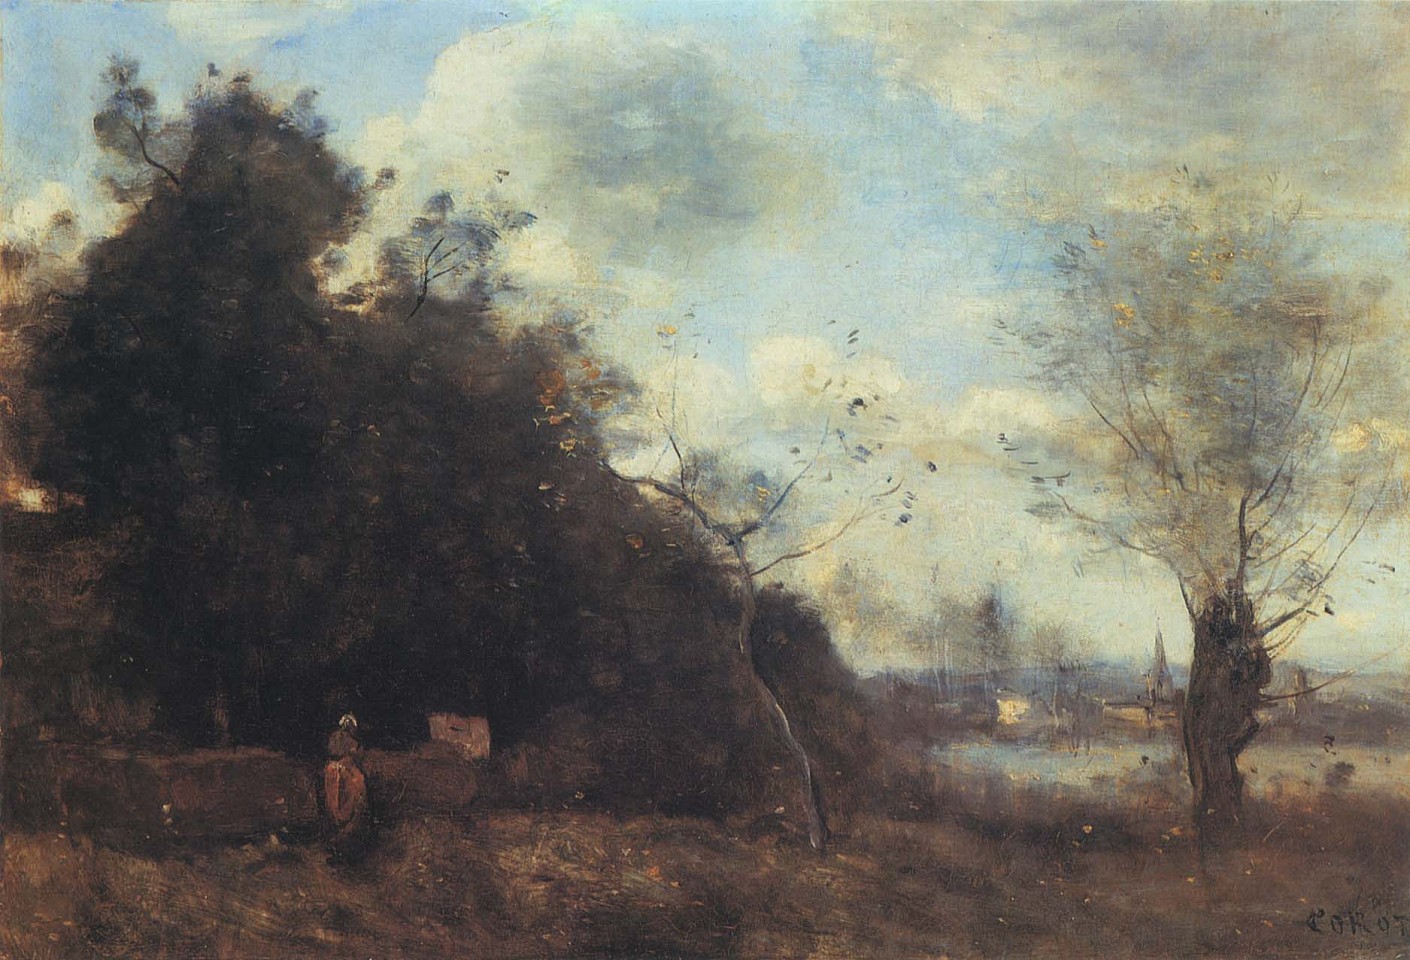 Jean Baptiste Camille Corot, Les Prés au Vieux Saule, 1870-73
Oil on canvas, 13 1/4 x 17 1/4 in. (33.7 x 43.8 cm)
COR-002-PA
Appraisal Value: $0.00
User2: $0.00
User3: $0.00